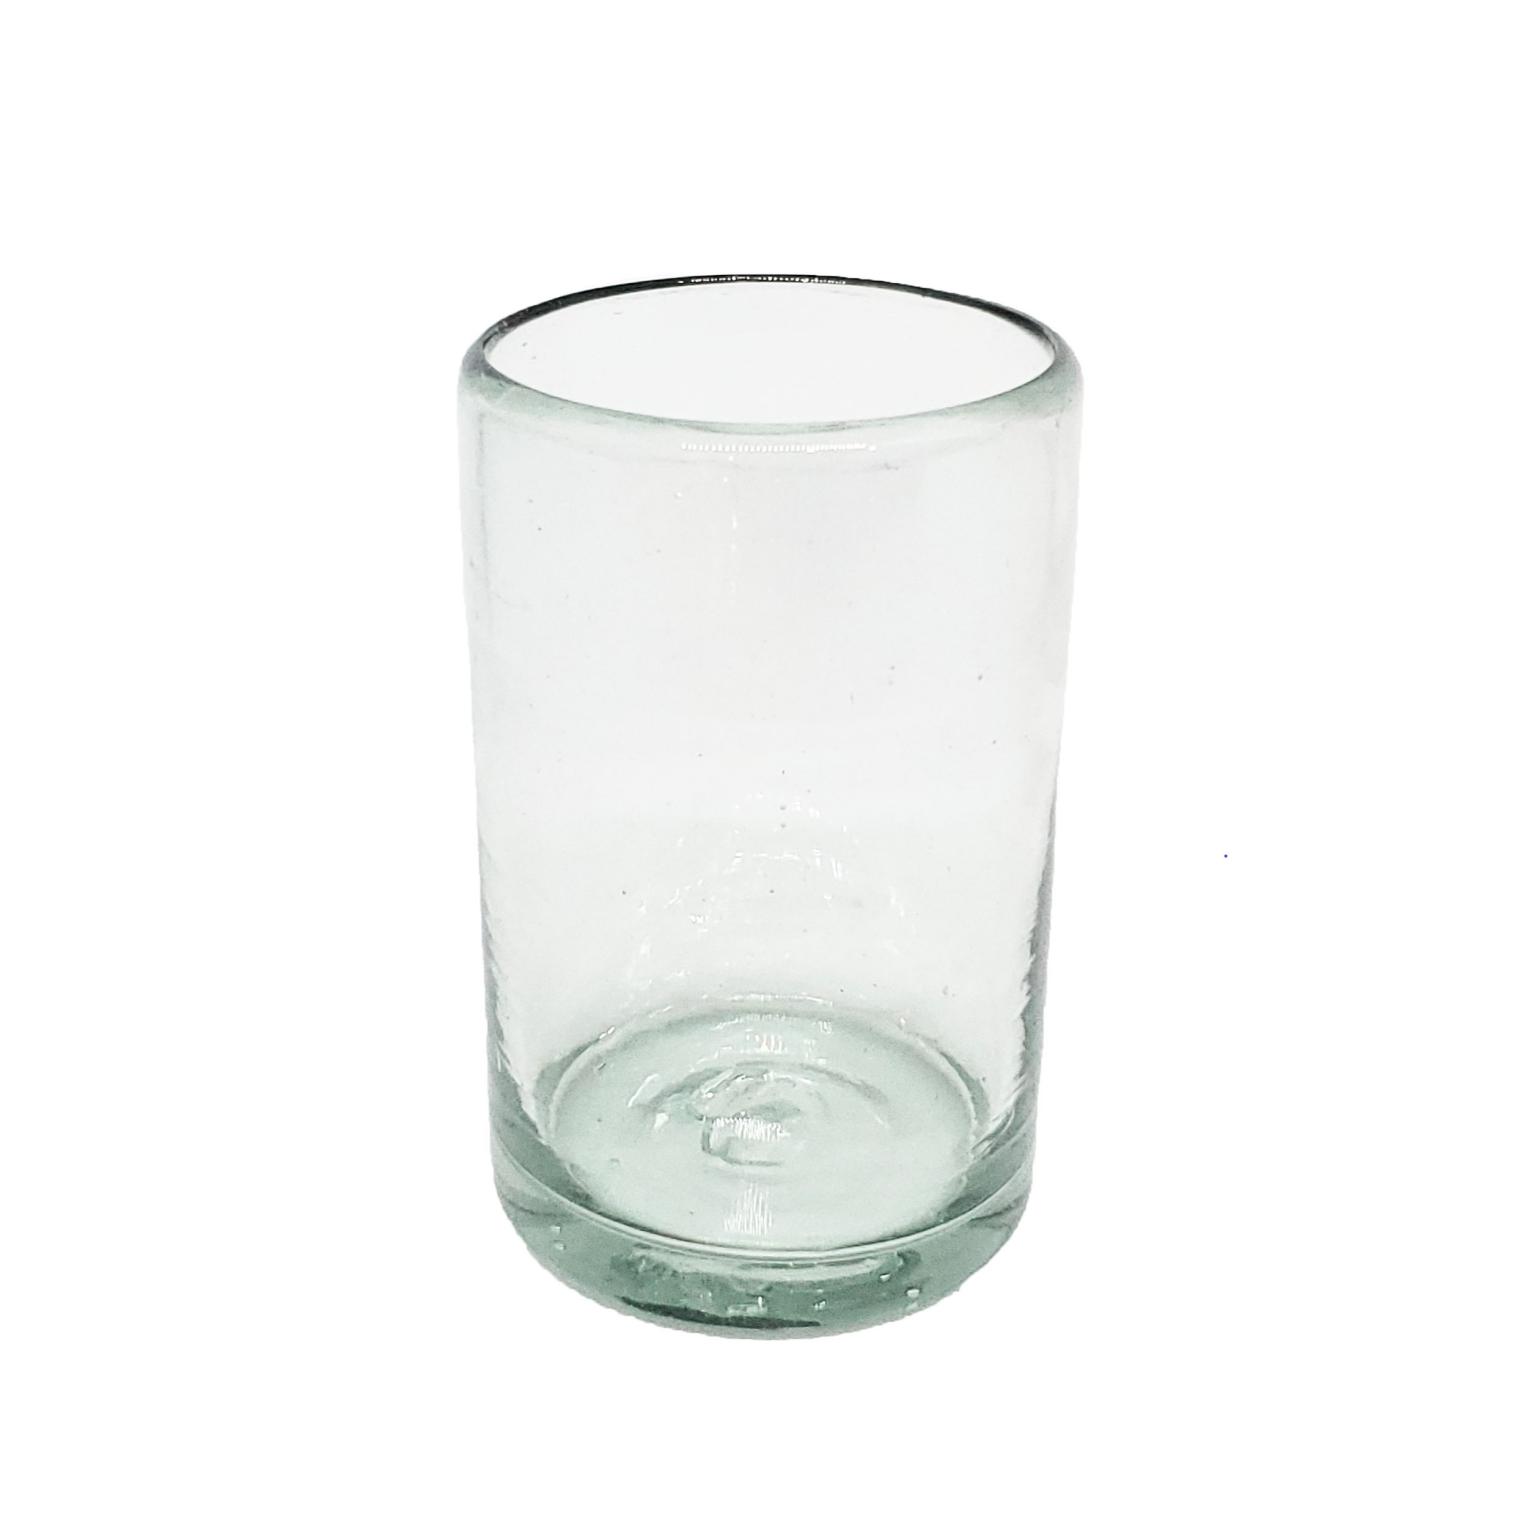 Ofertas / vasos Jugo 9oz Transparentes / Éstos artesanales vasos le darán un toque clásico a su bebida favorita.